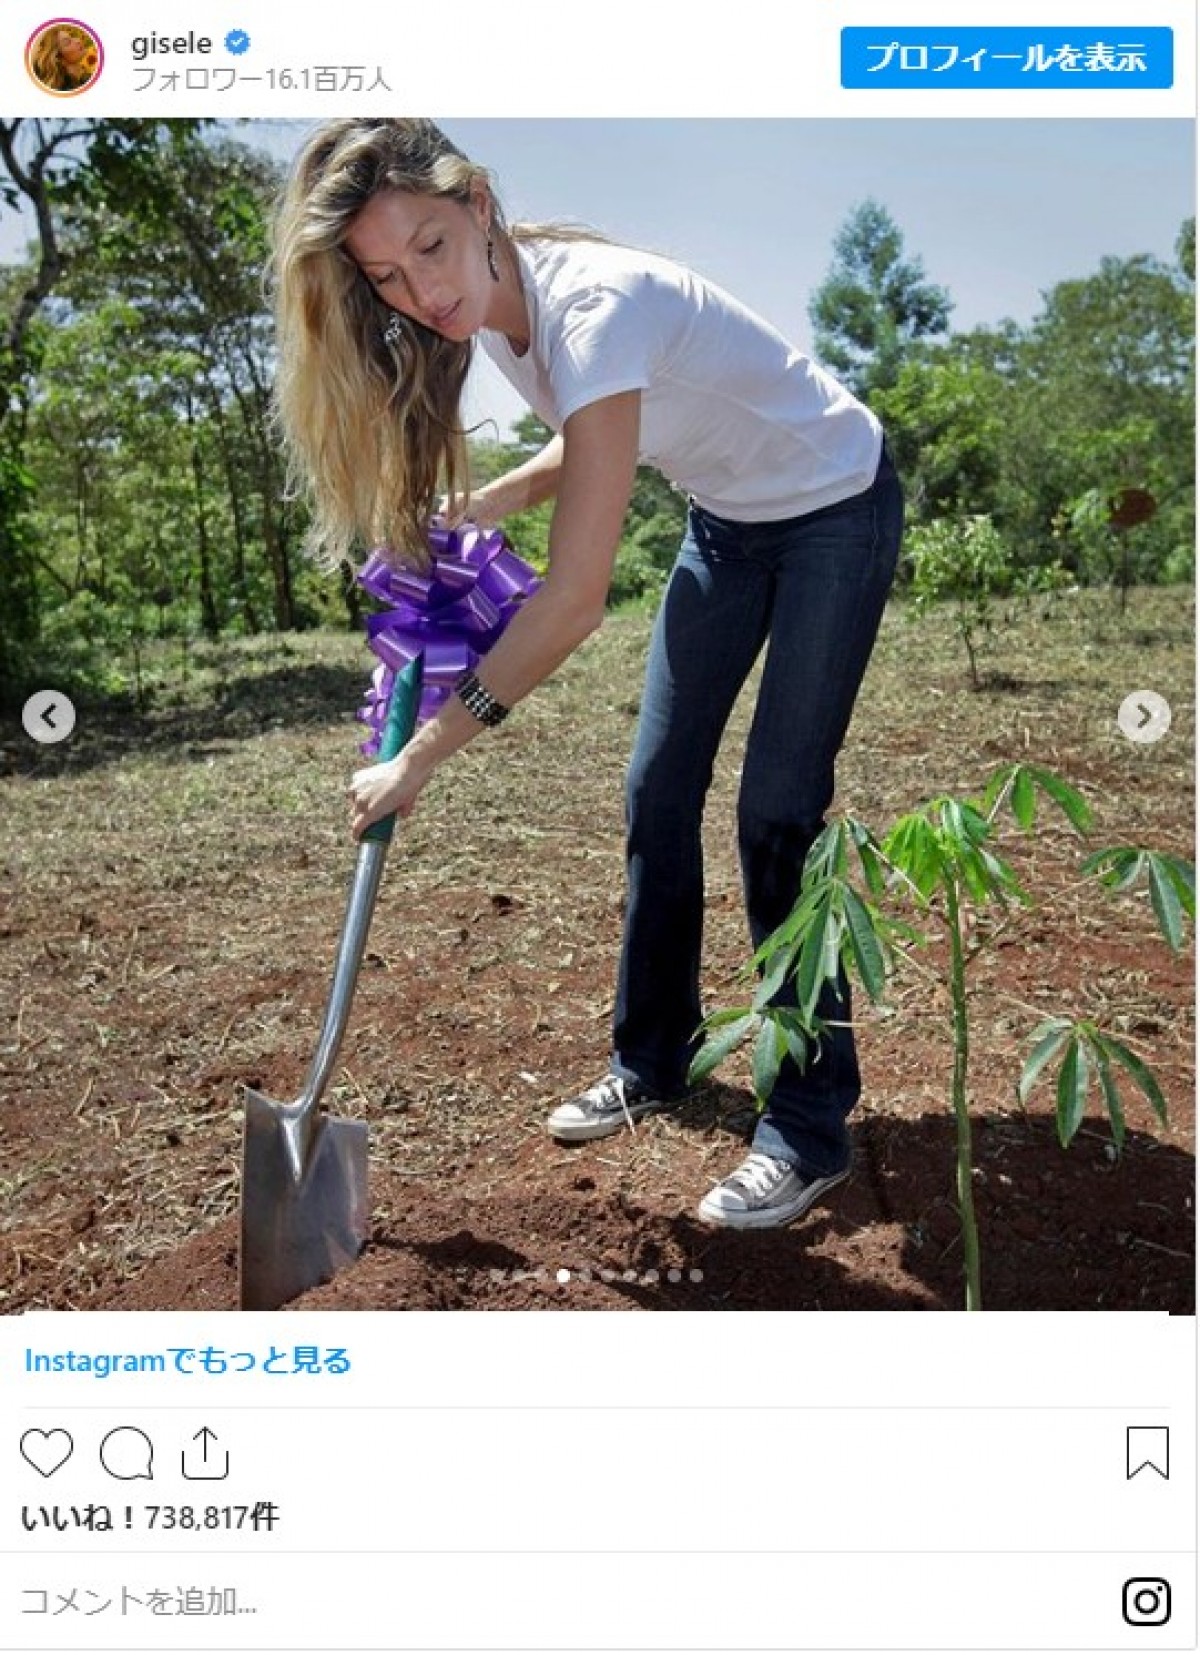 ジゼル・ブンチェンが40歳に　誕生日を記念してアマゾンに4万本を植樹